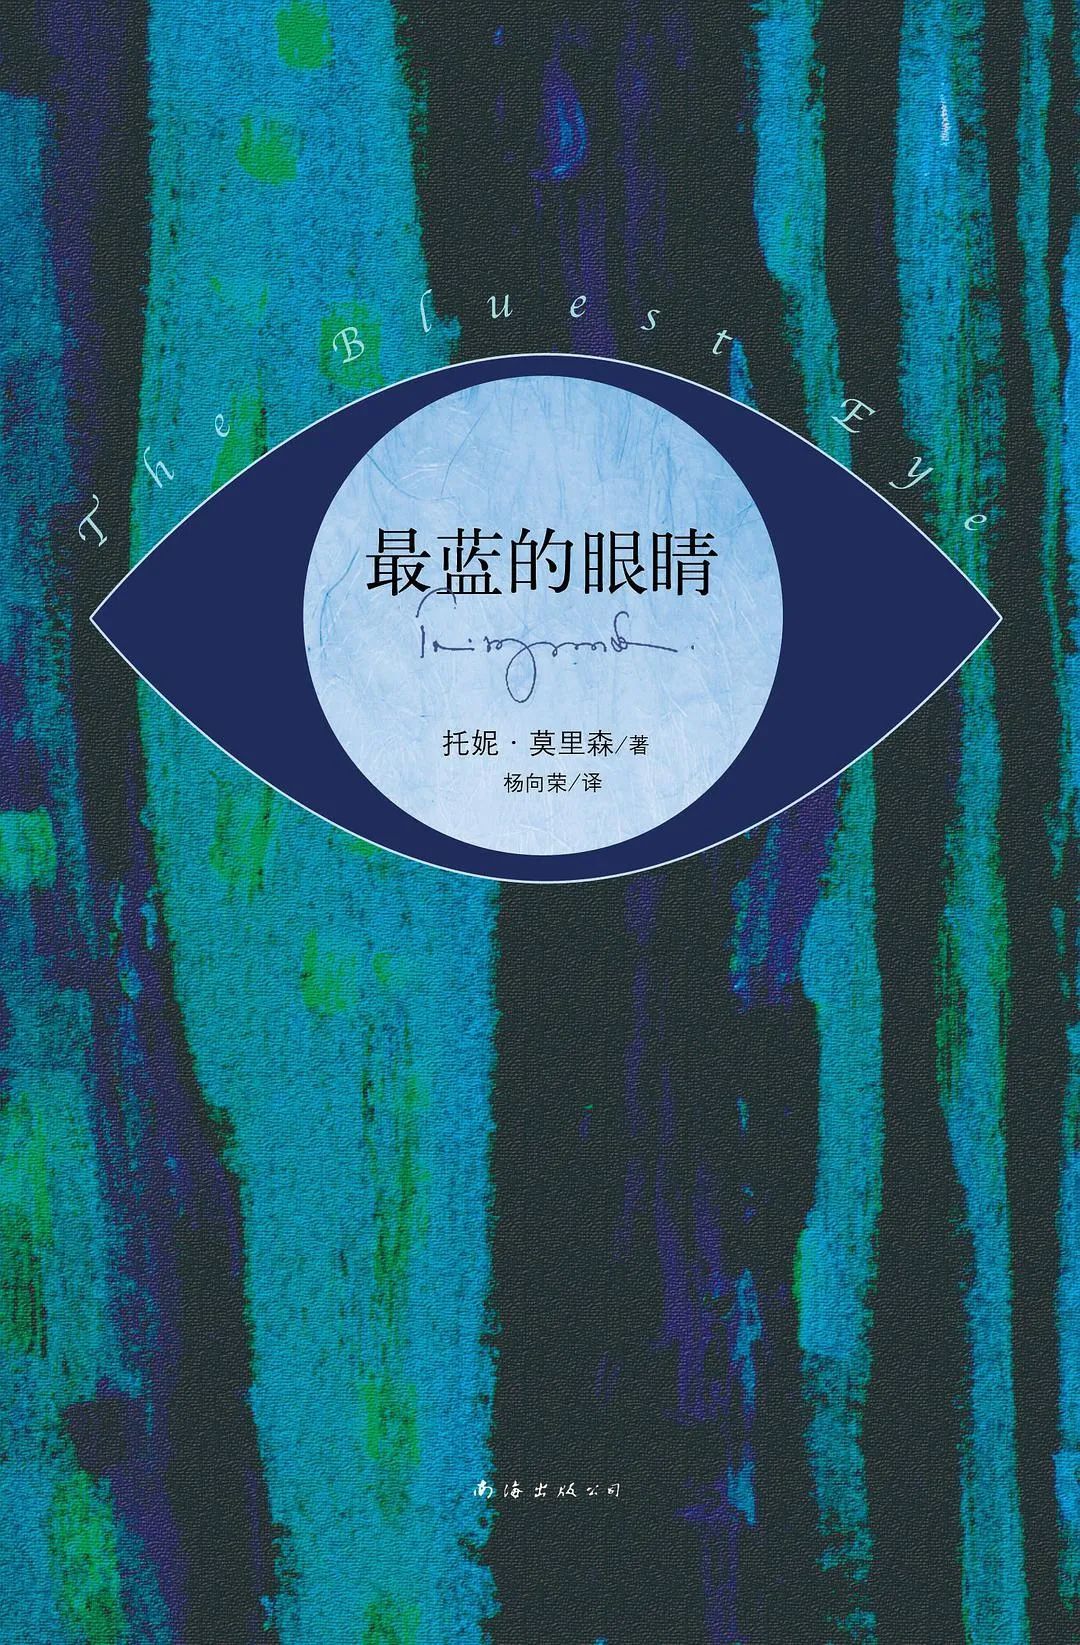 《最蓝的眼睛》，[美]托妮·莫里森著，杨向荣译，新经典文化 | 南海出版公司，2013年8月。